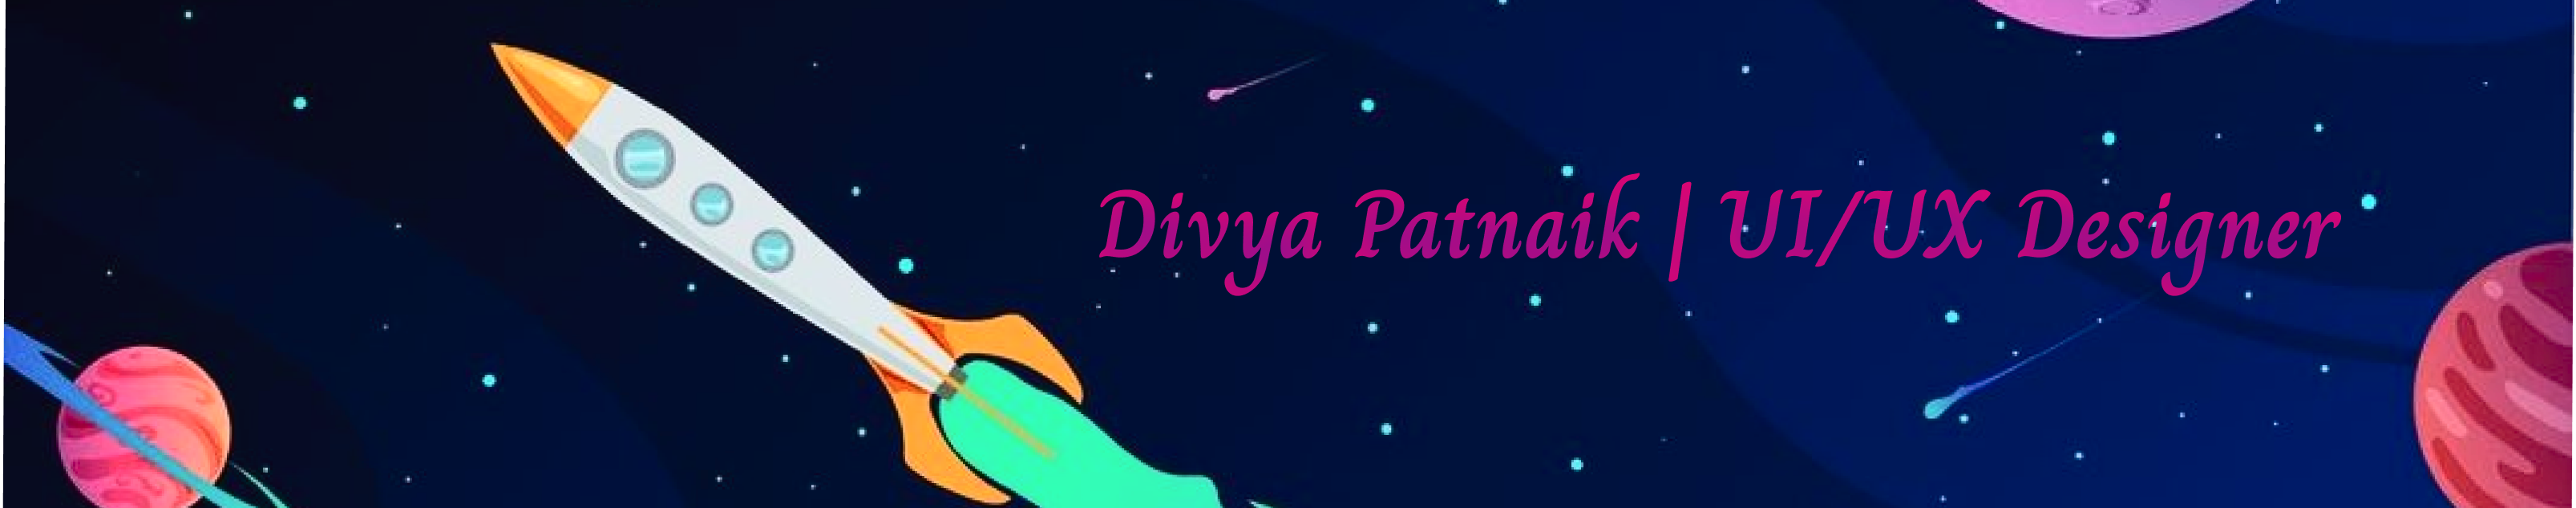 Divya A Patnaik's profile banner